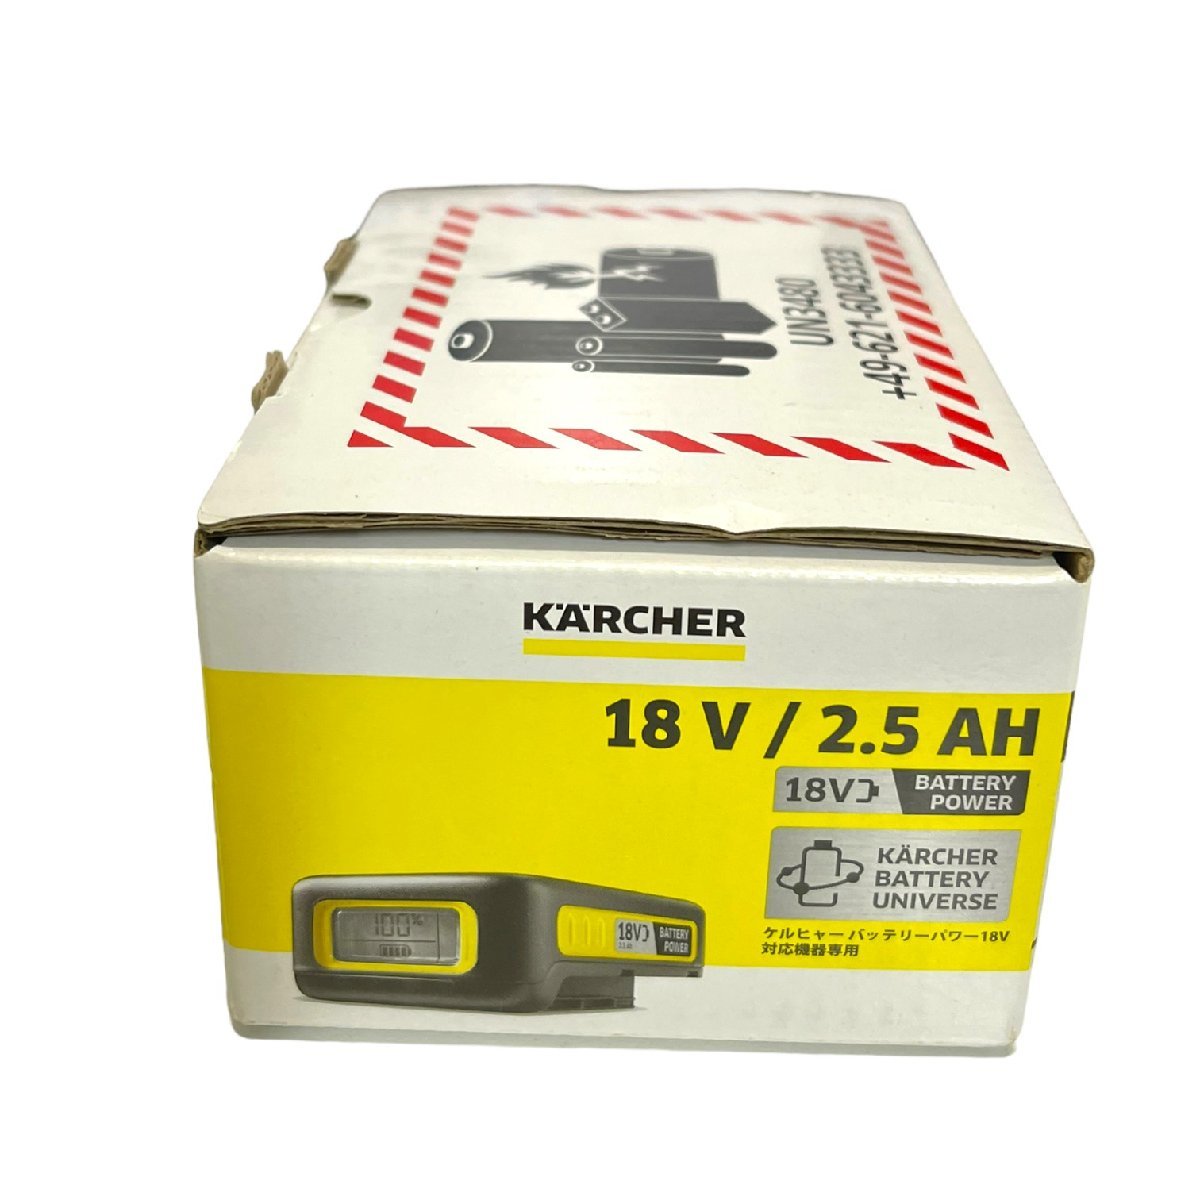 未使用品 KARCHER ケルヒャー バッテリーパワー (18V/2.5AH) 2.445